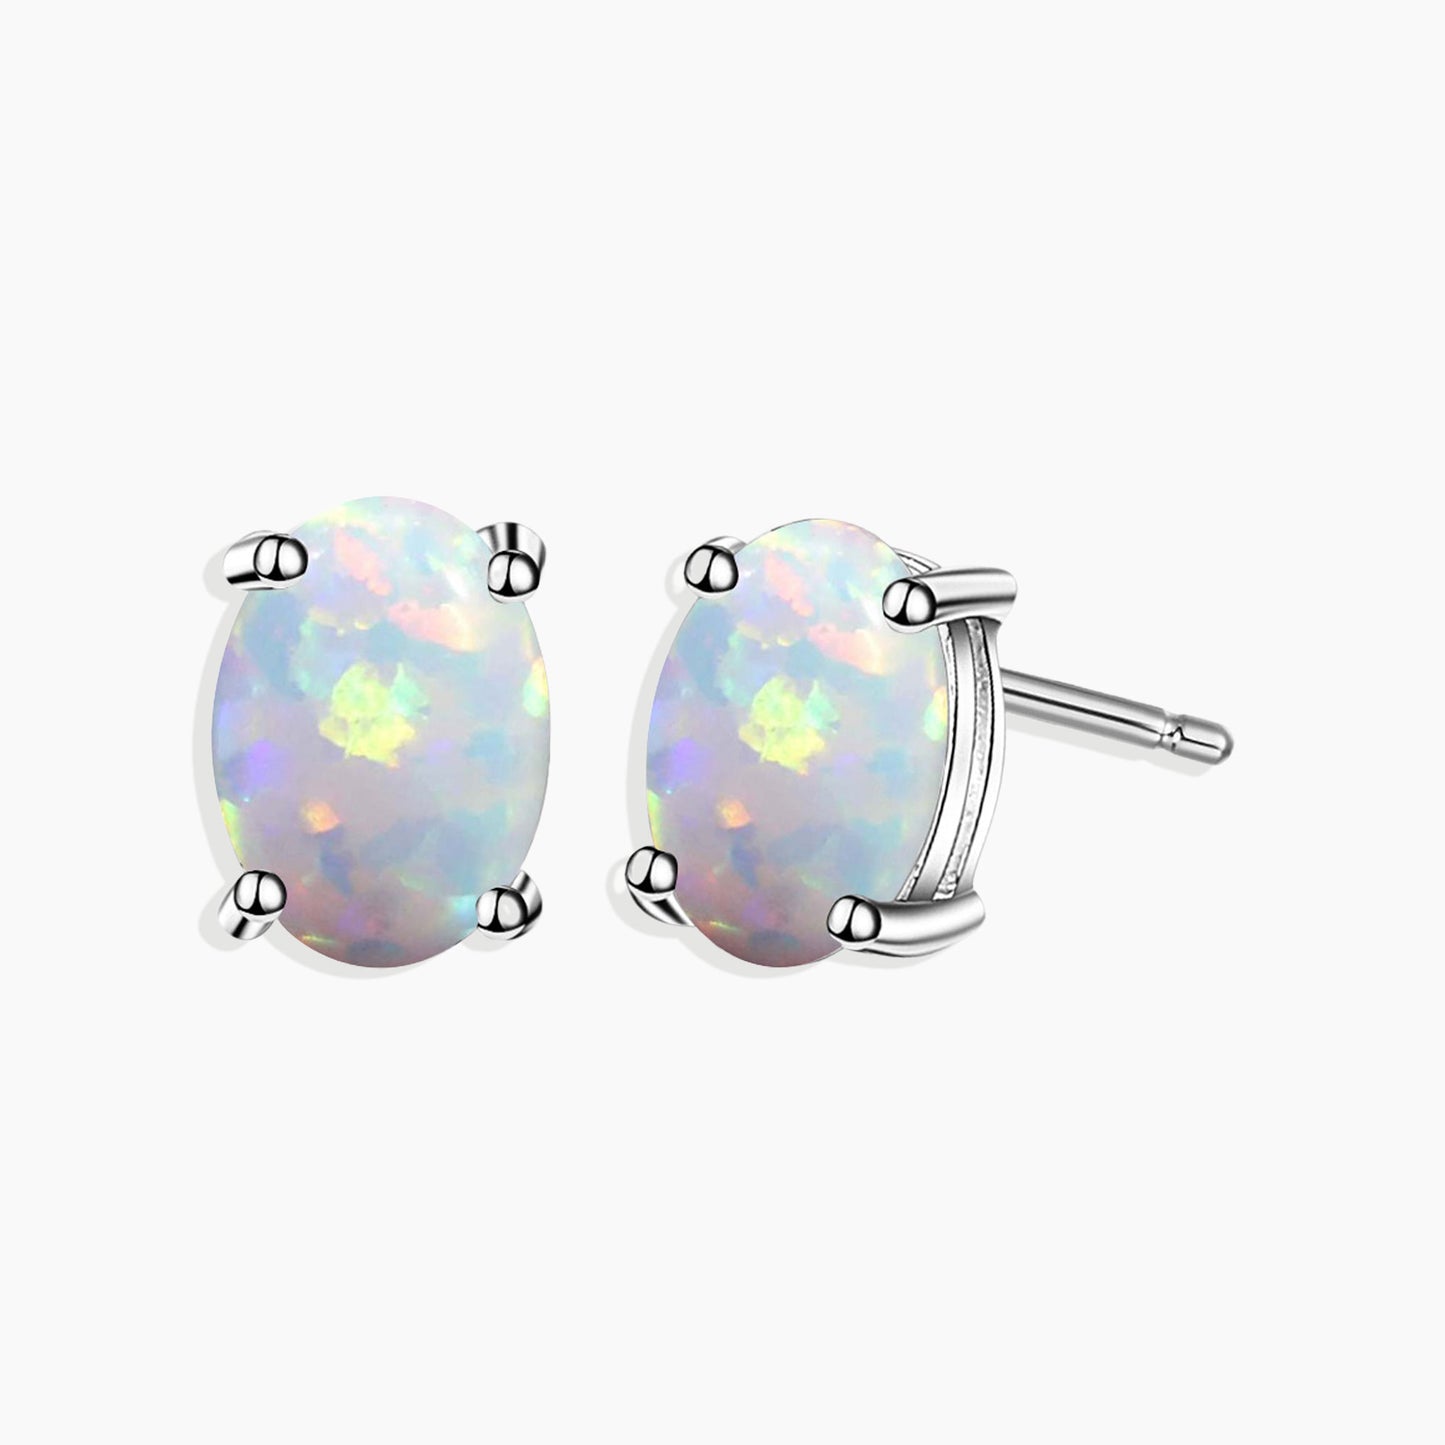 Oval Cut Stud Earrings in Sterling Silver -  Opal